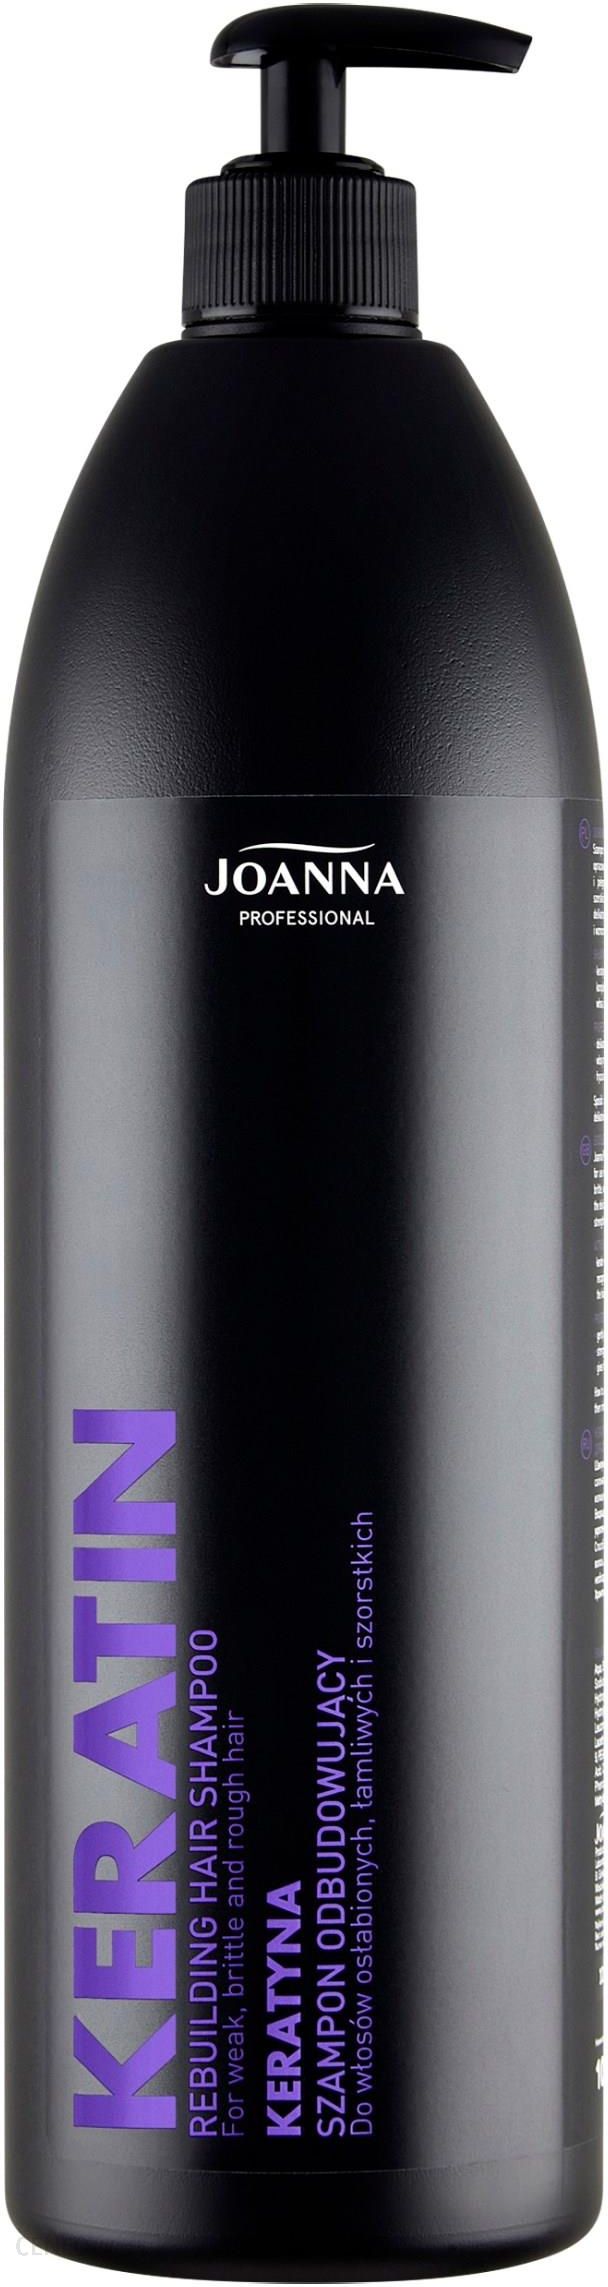 joanna szampon z keratyną skład